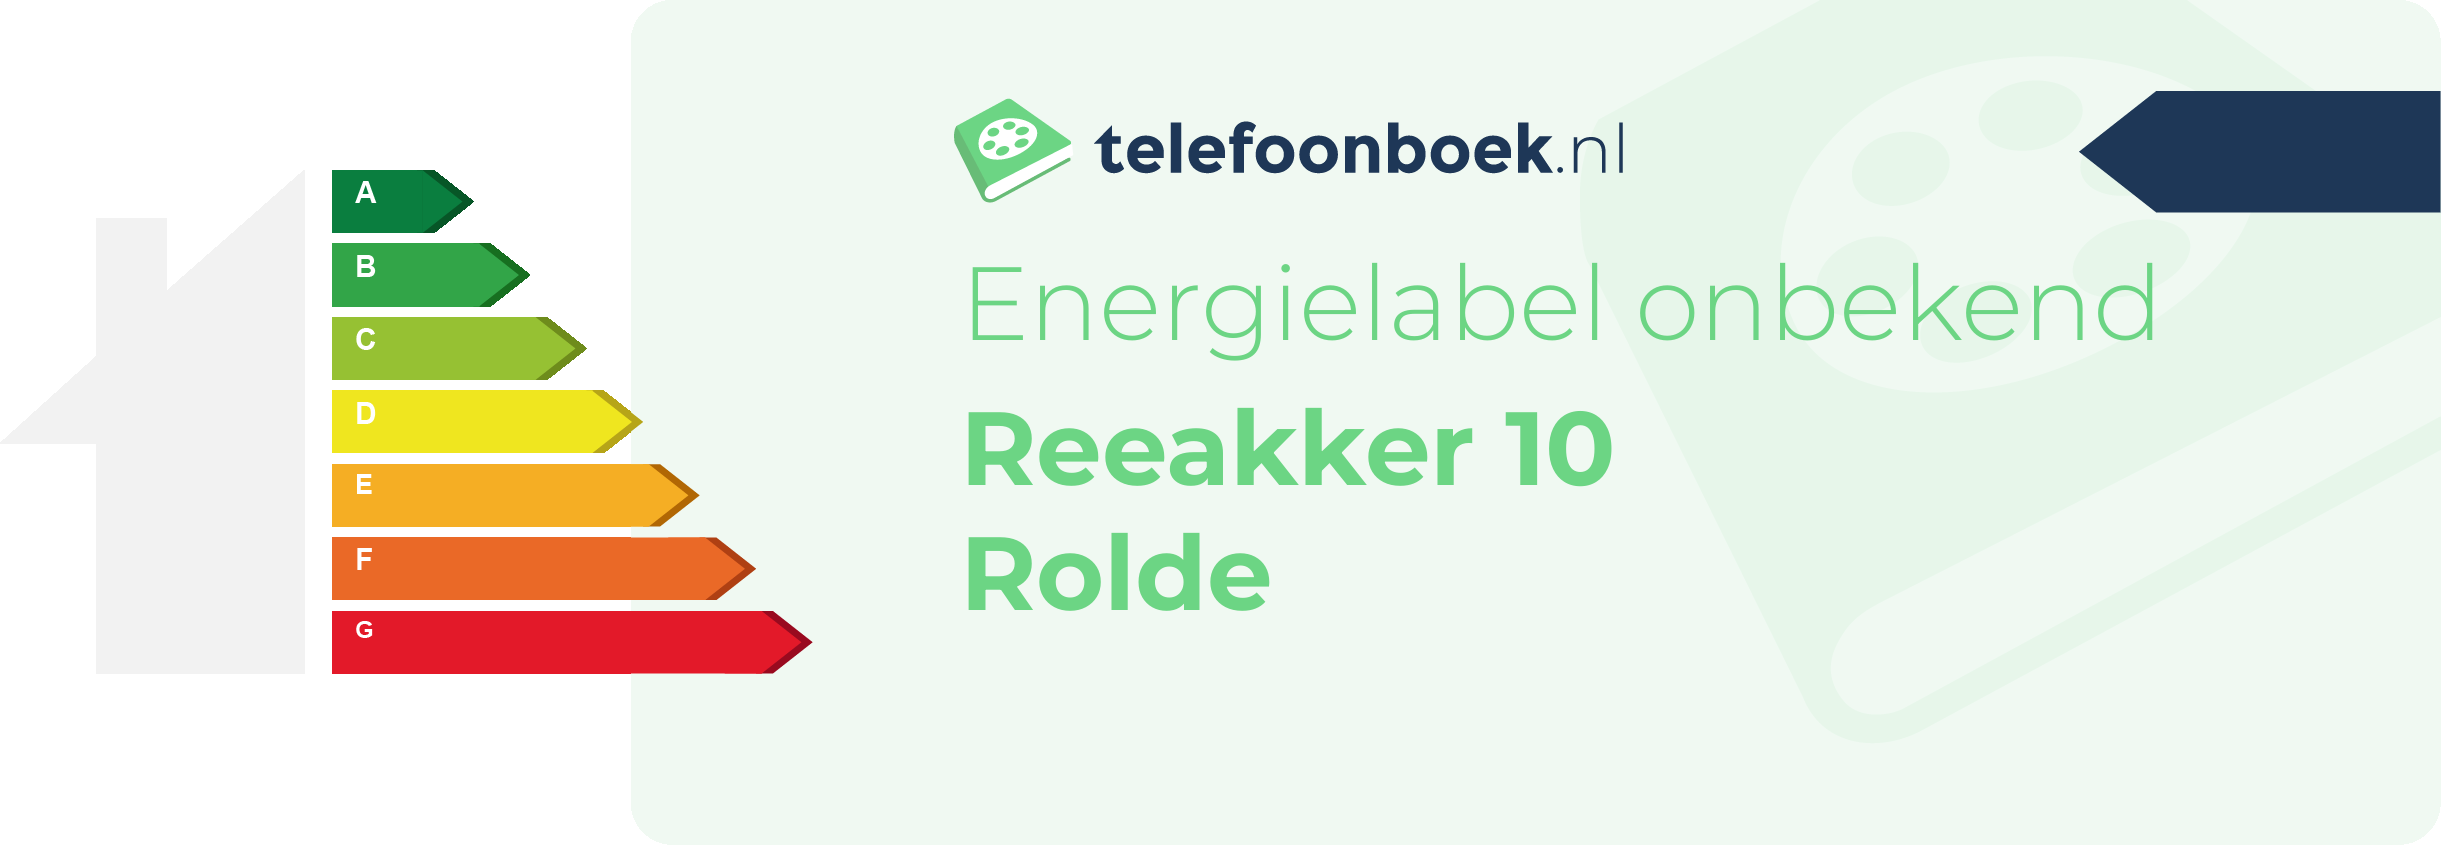 Energielabel Reeakker 10 Rolde